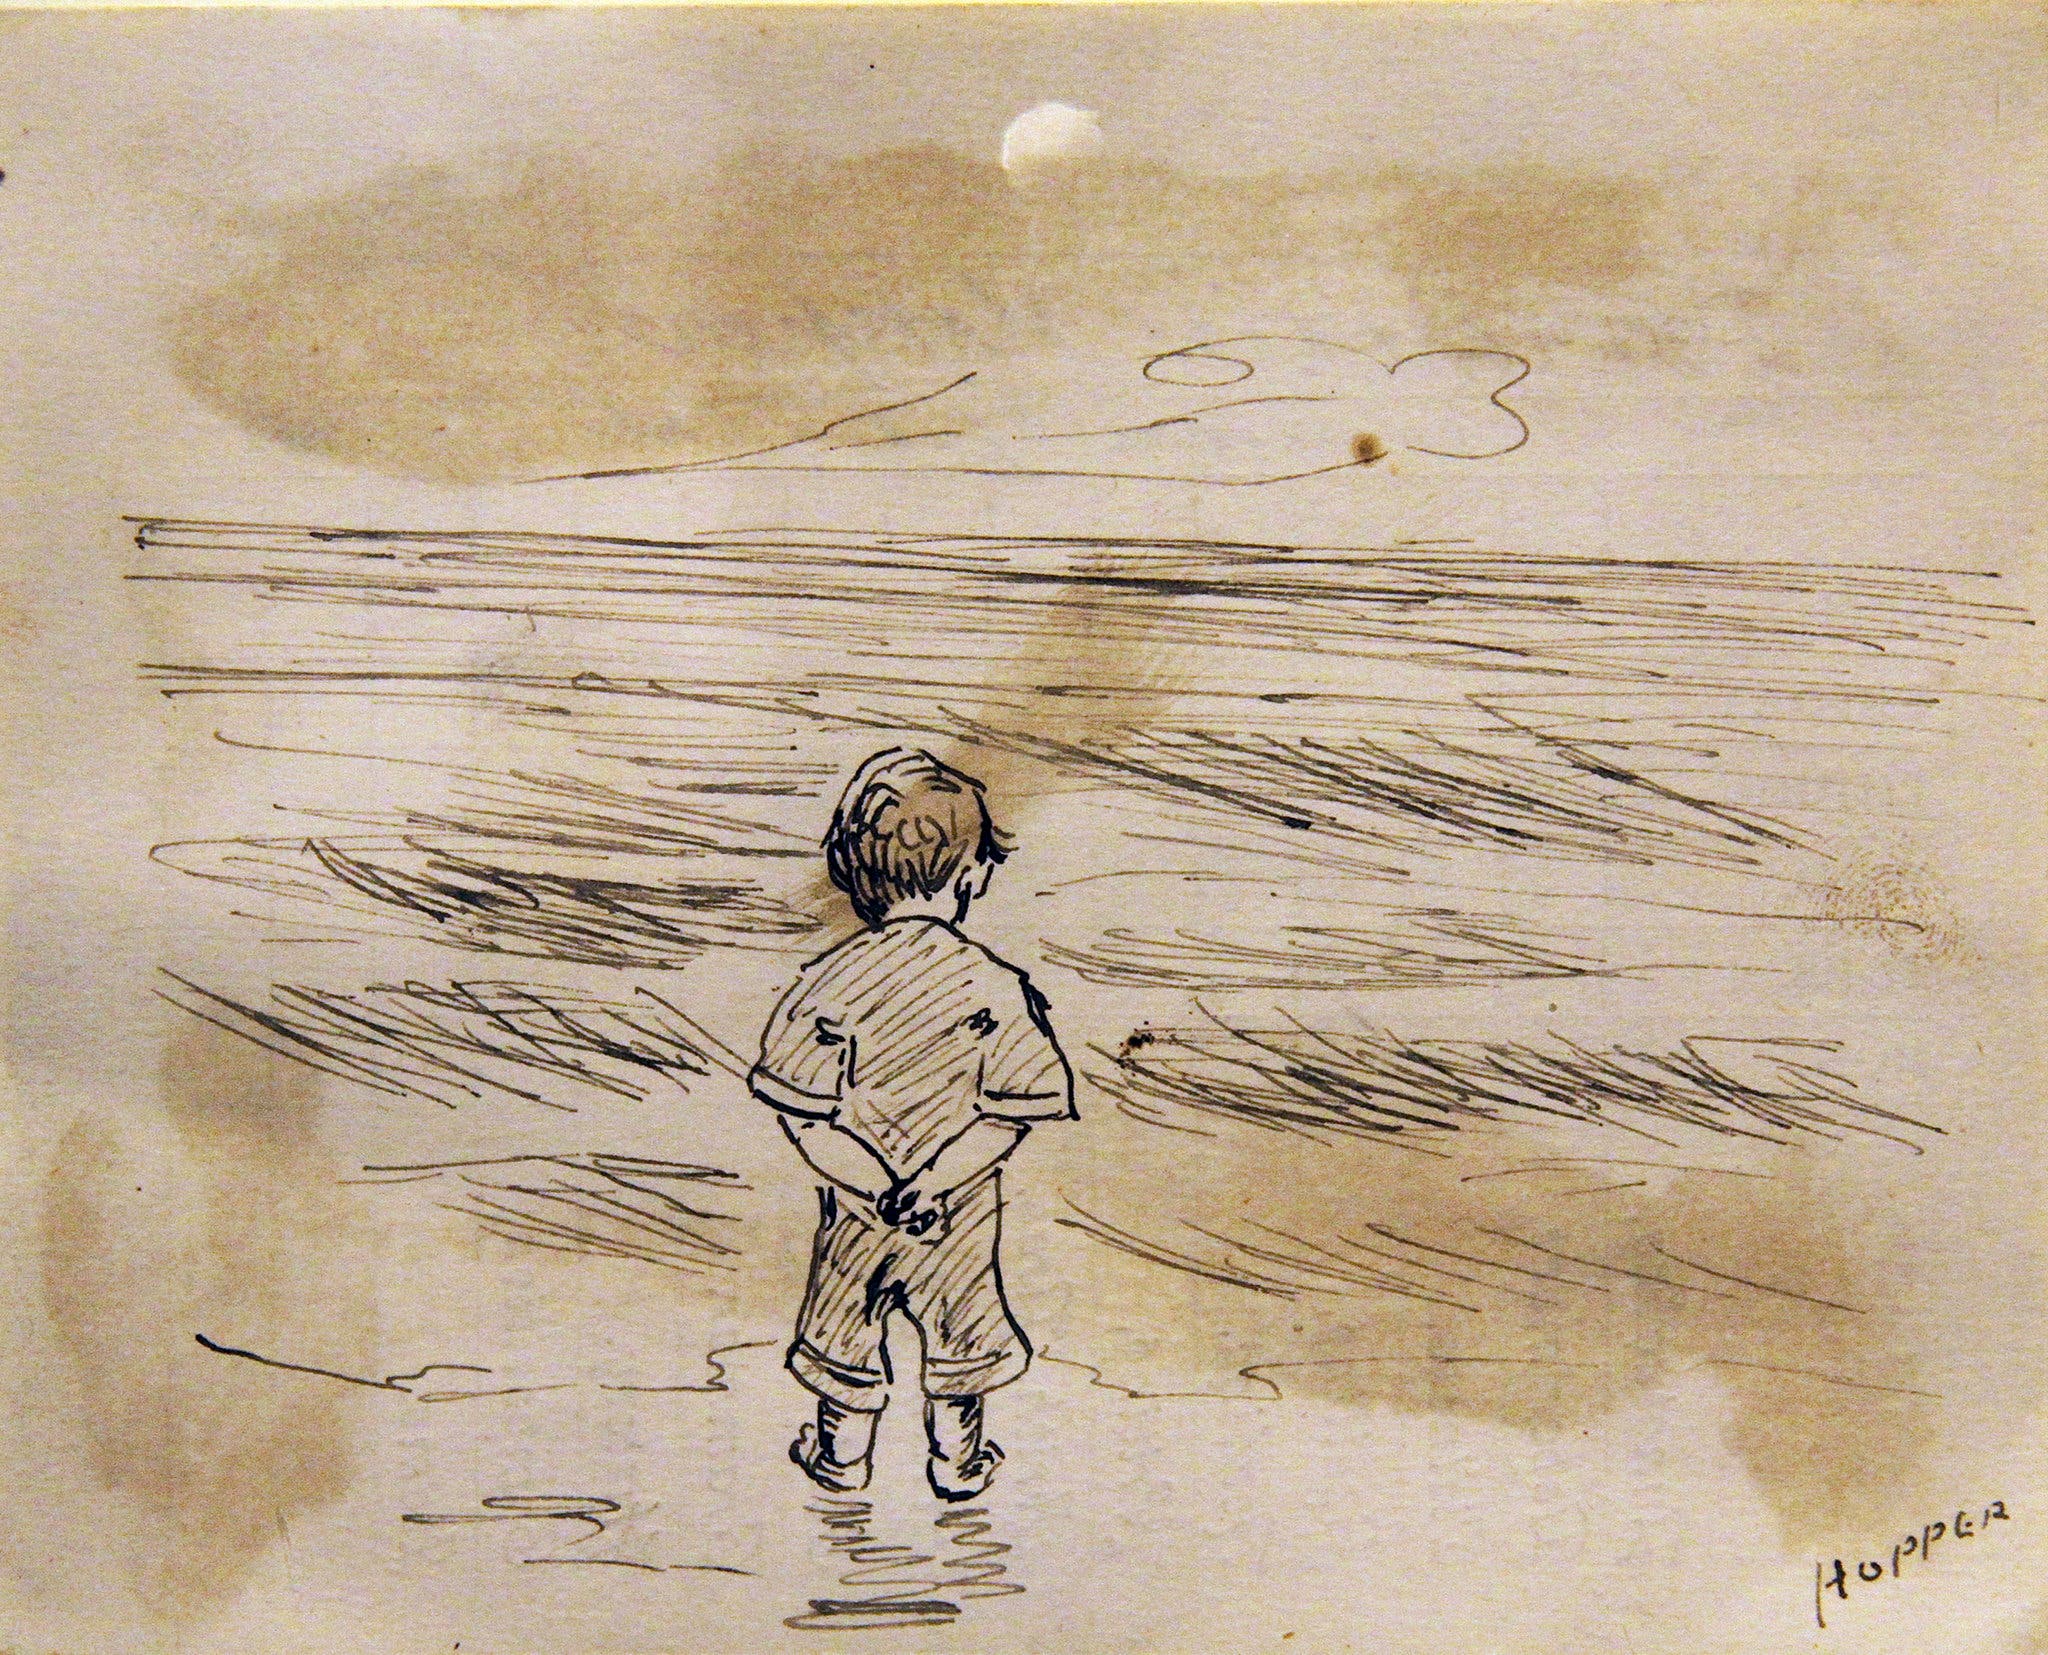 바다를 바라보는 소년(Little Boy Looking at the Sea) by Edward Hopper - 1891 - 11.43 cm x 8.89 cm 